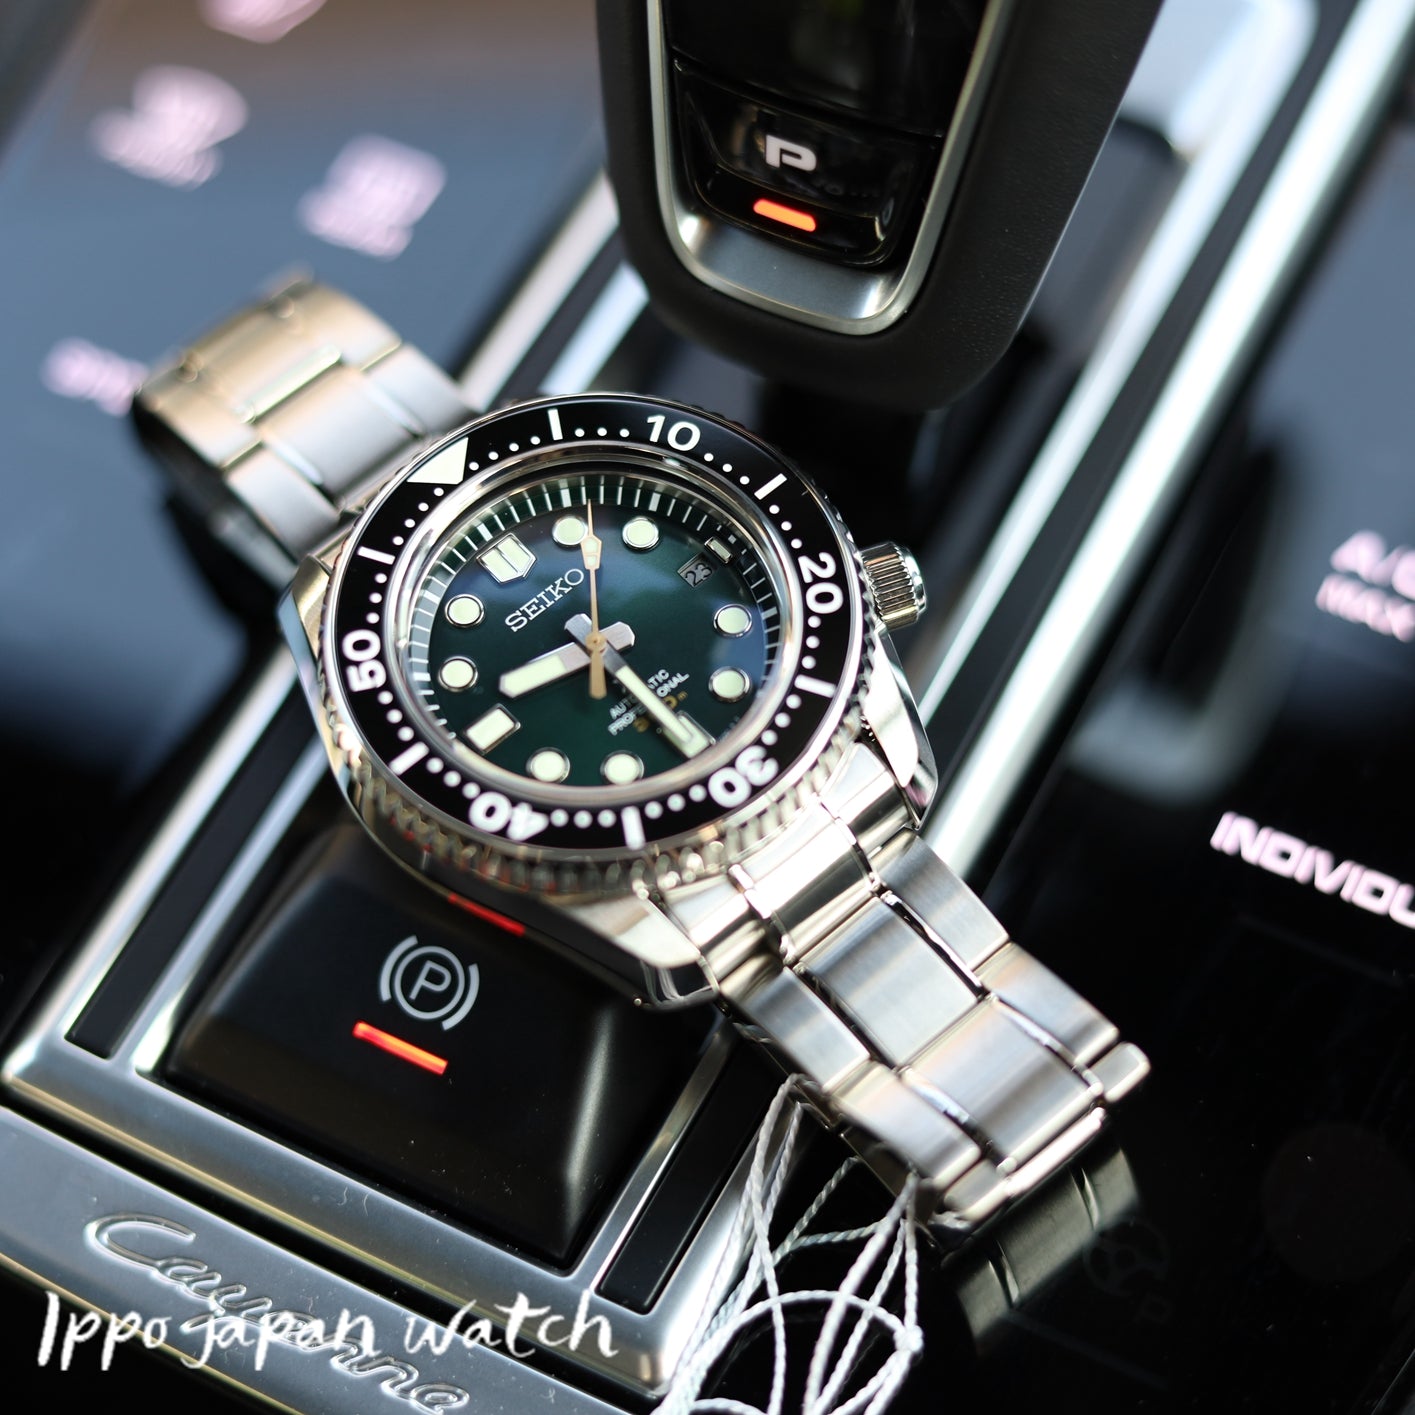 SEIKO Prospex SBDX043 SLA047J1 Mechanical Stainless Watch - IPPO JAPAN WATCH 